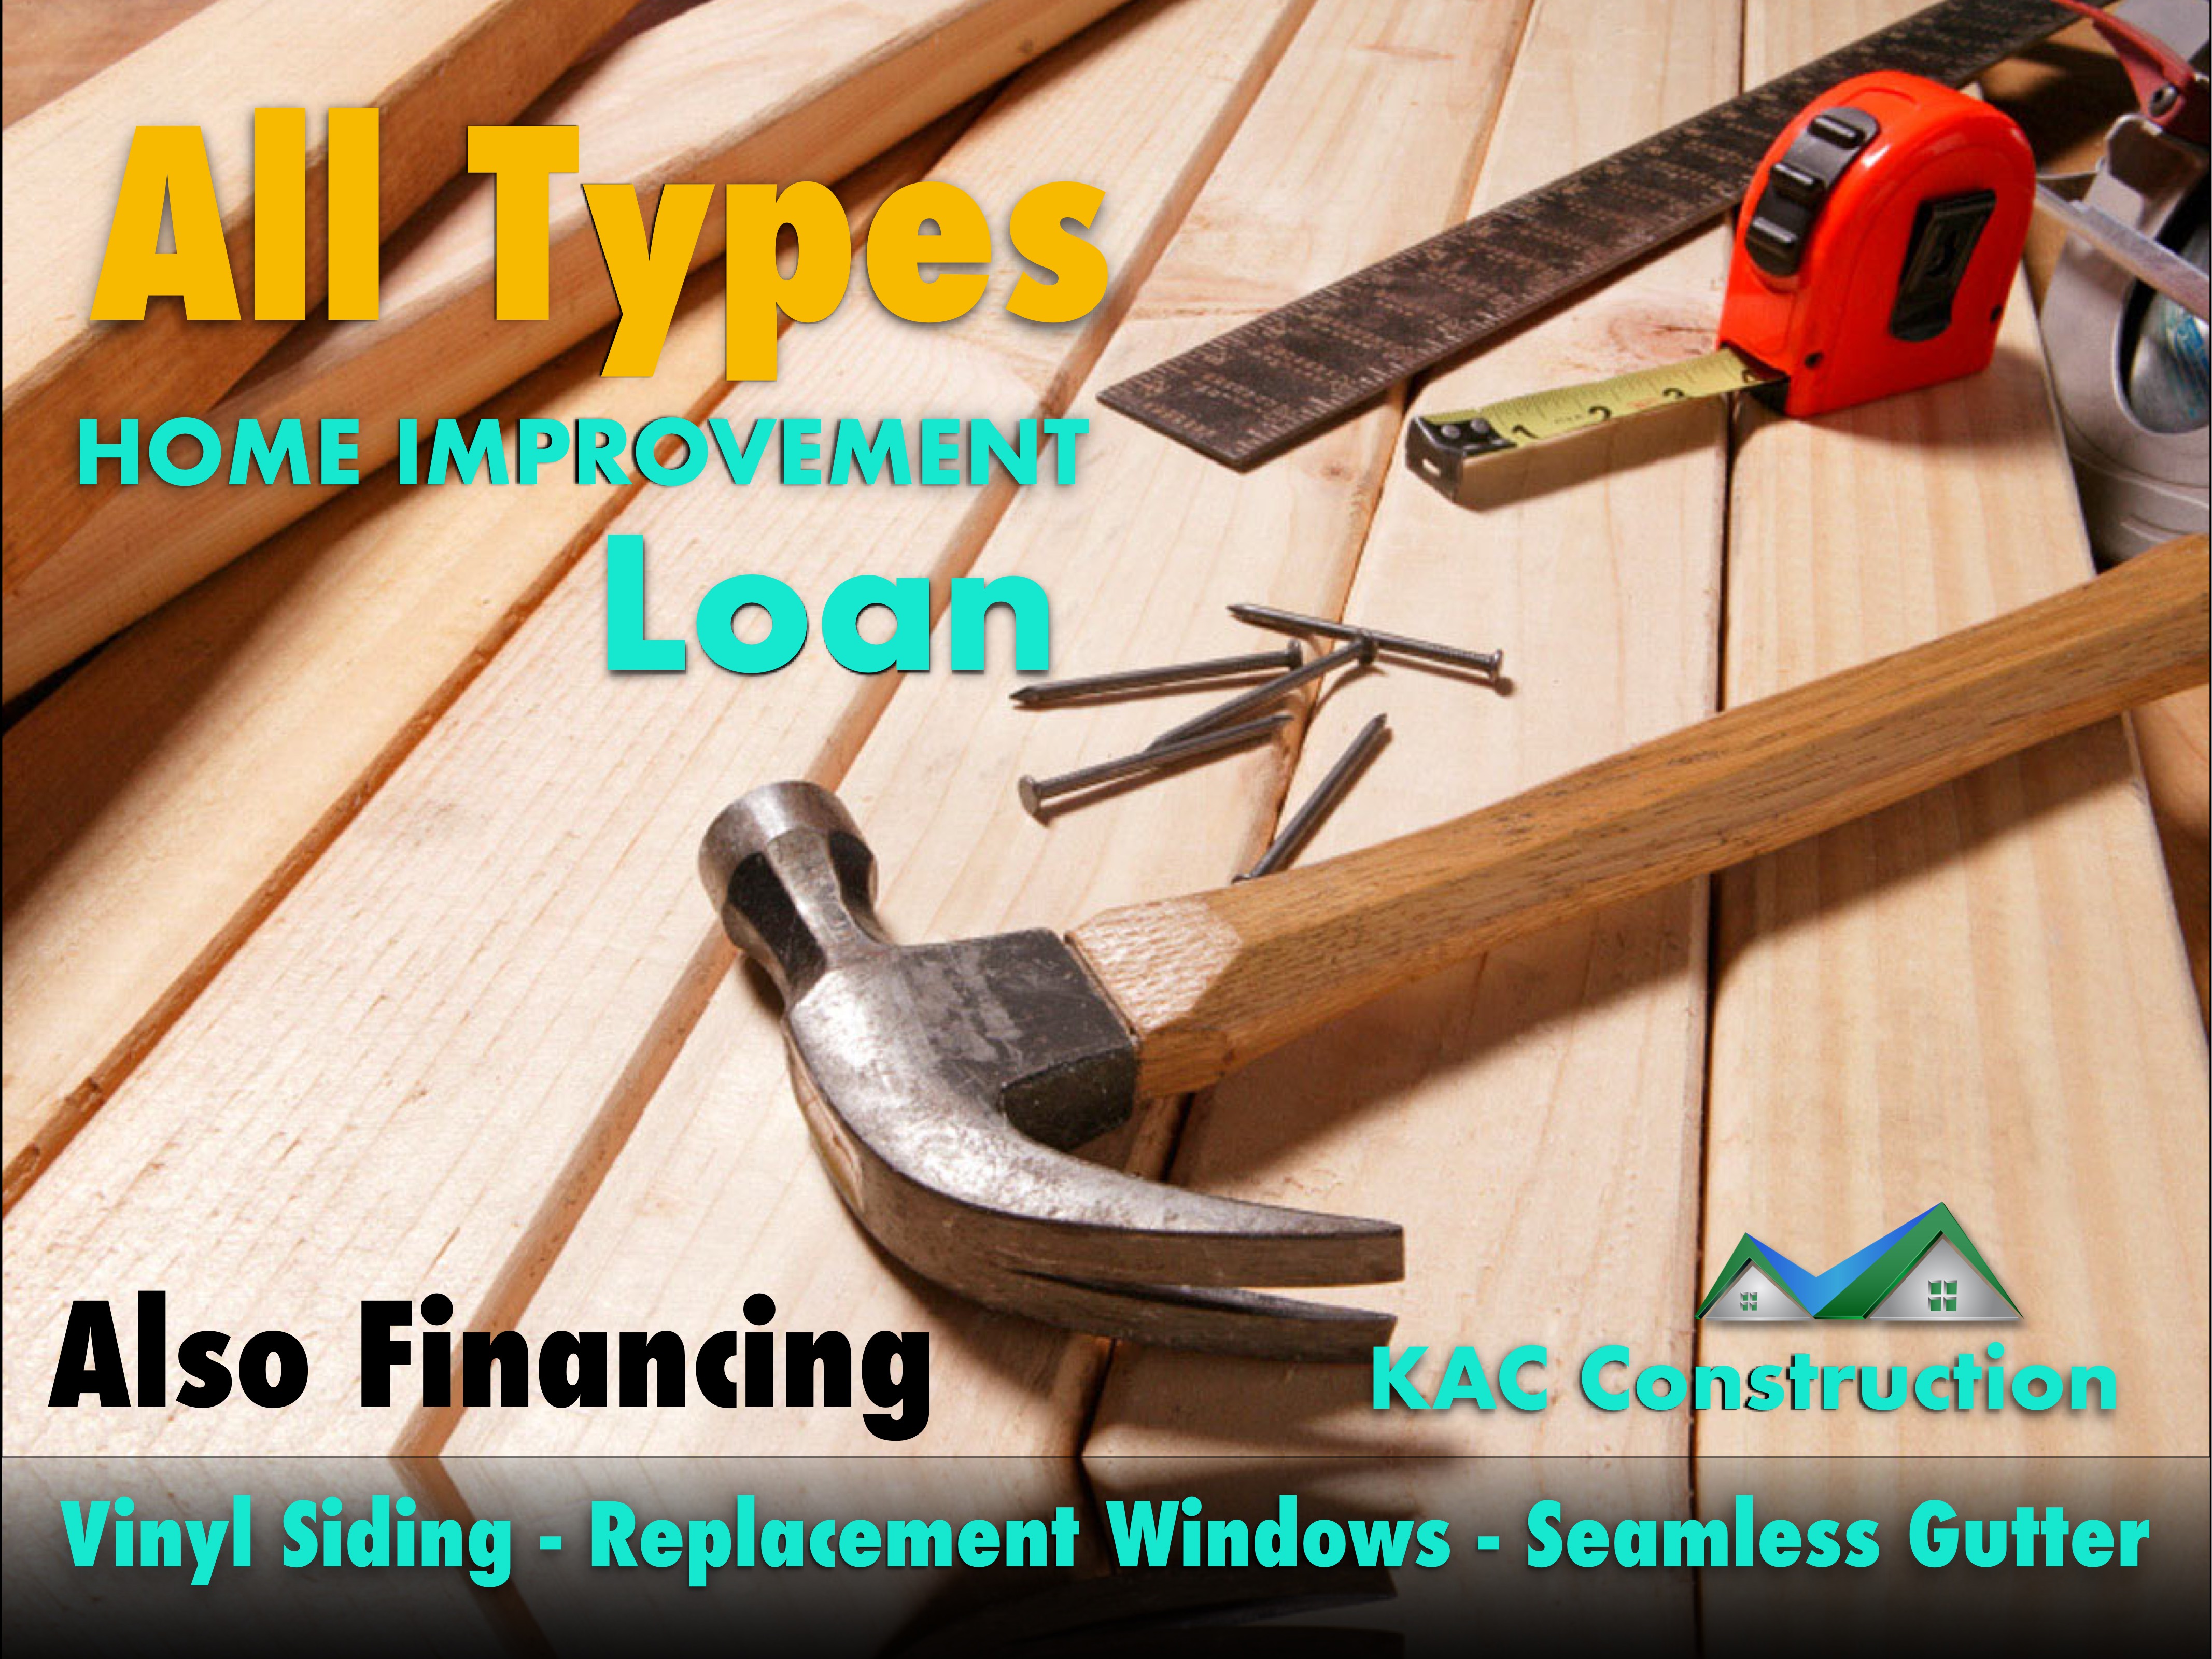 Home improvement, home improvement loan, home improvement Loan ri, roof replacement loan ri, roof Loan ri, roofing Loan ri, roofer Loan ri, roof ri,